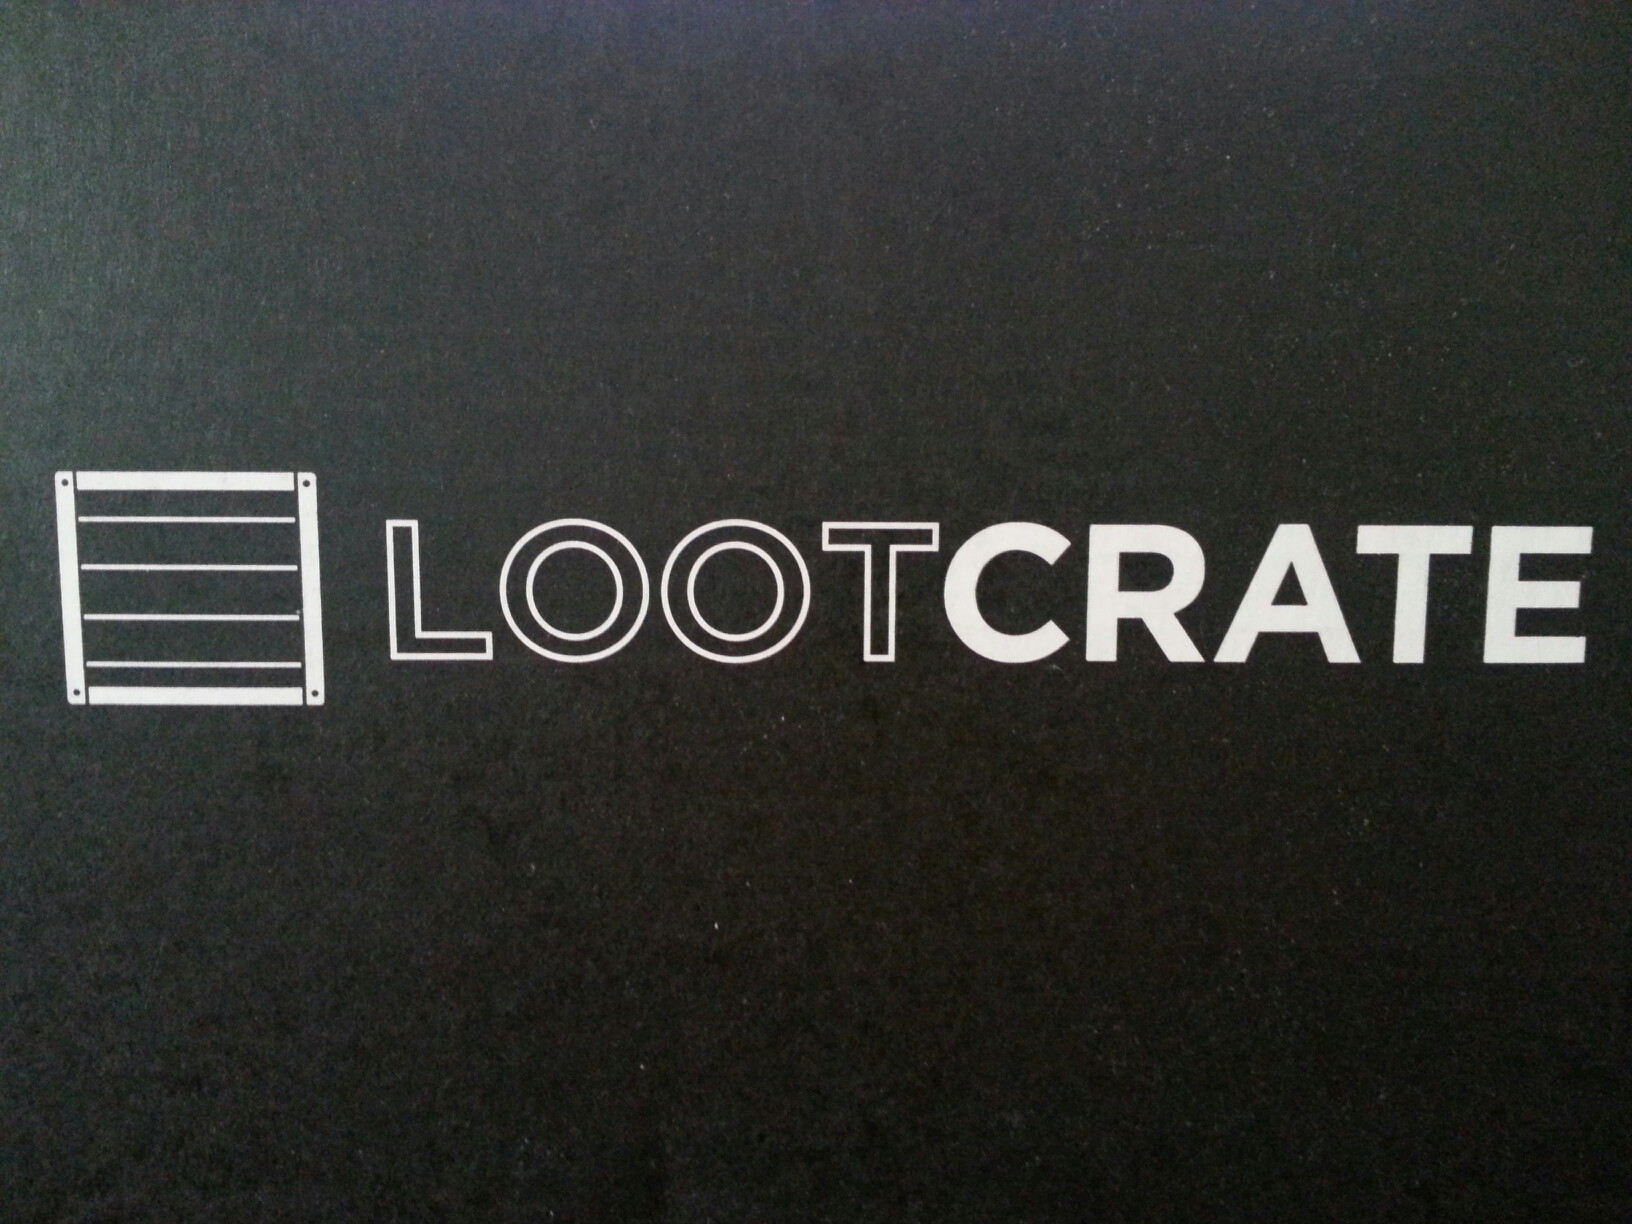 Loot crate may 2014